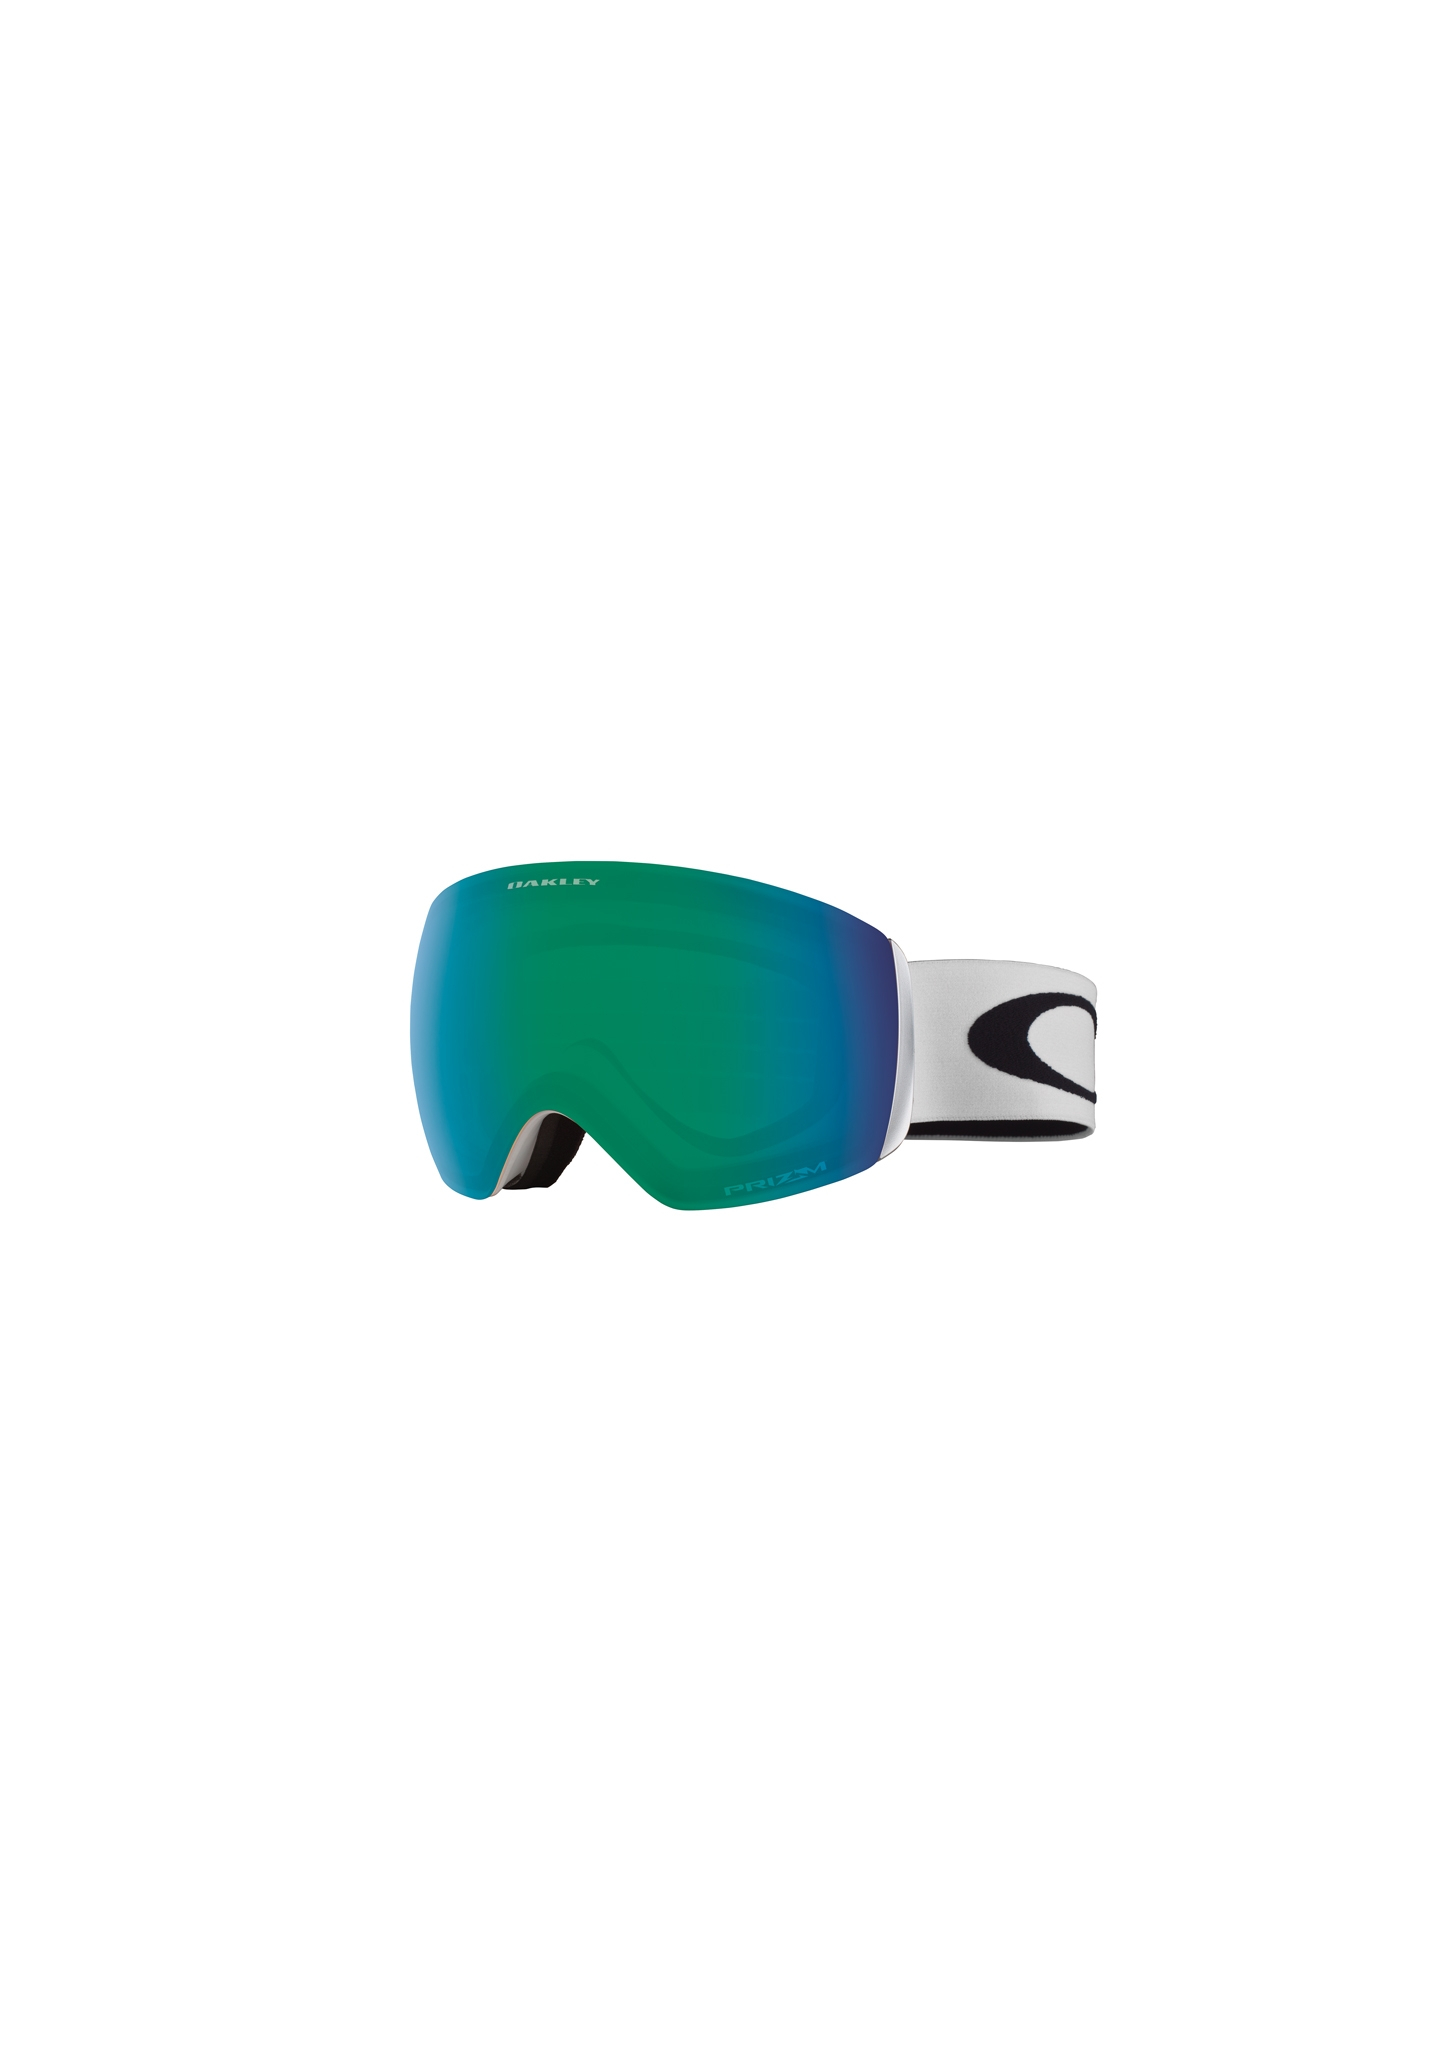 Oakley Flight Deck M Snowboardbrillen grün/blau One Size